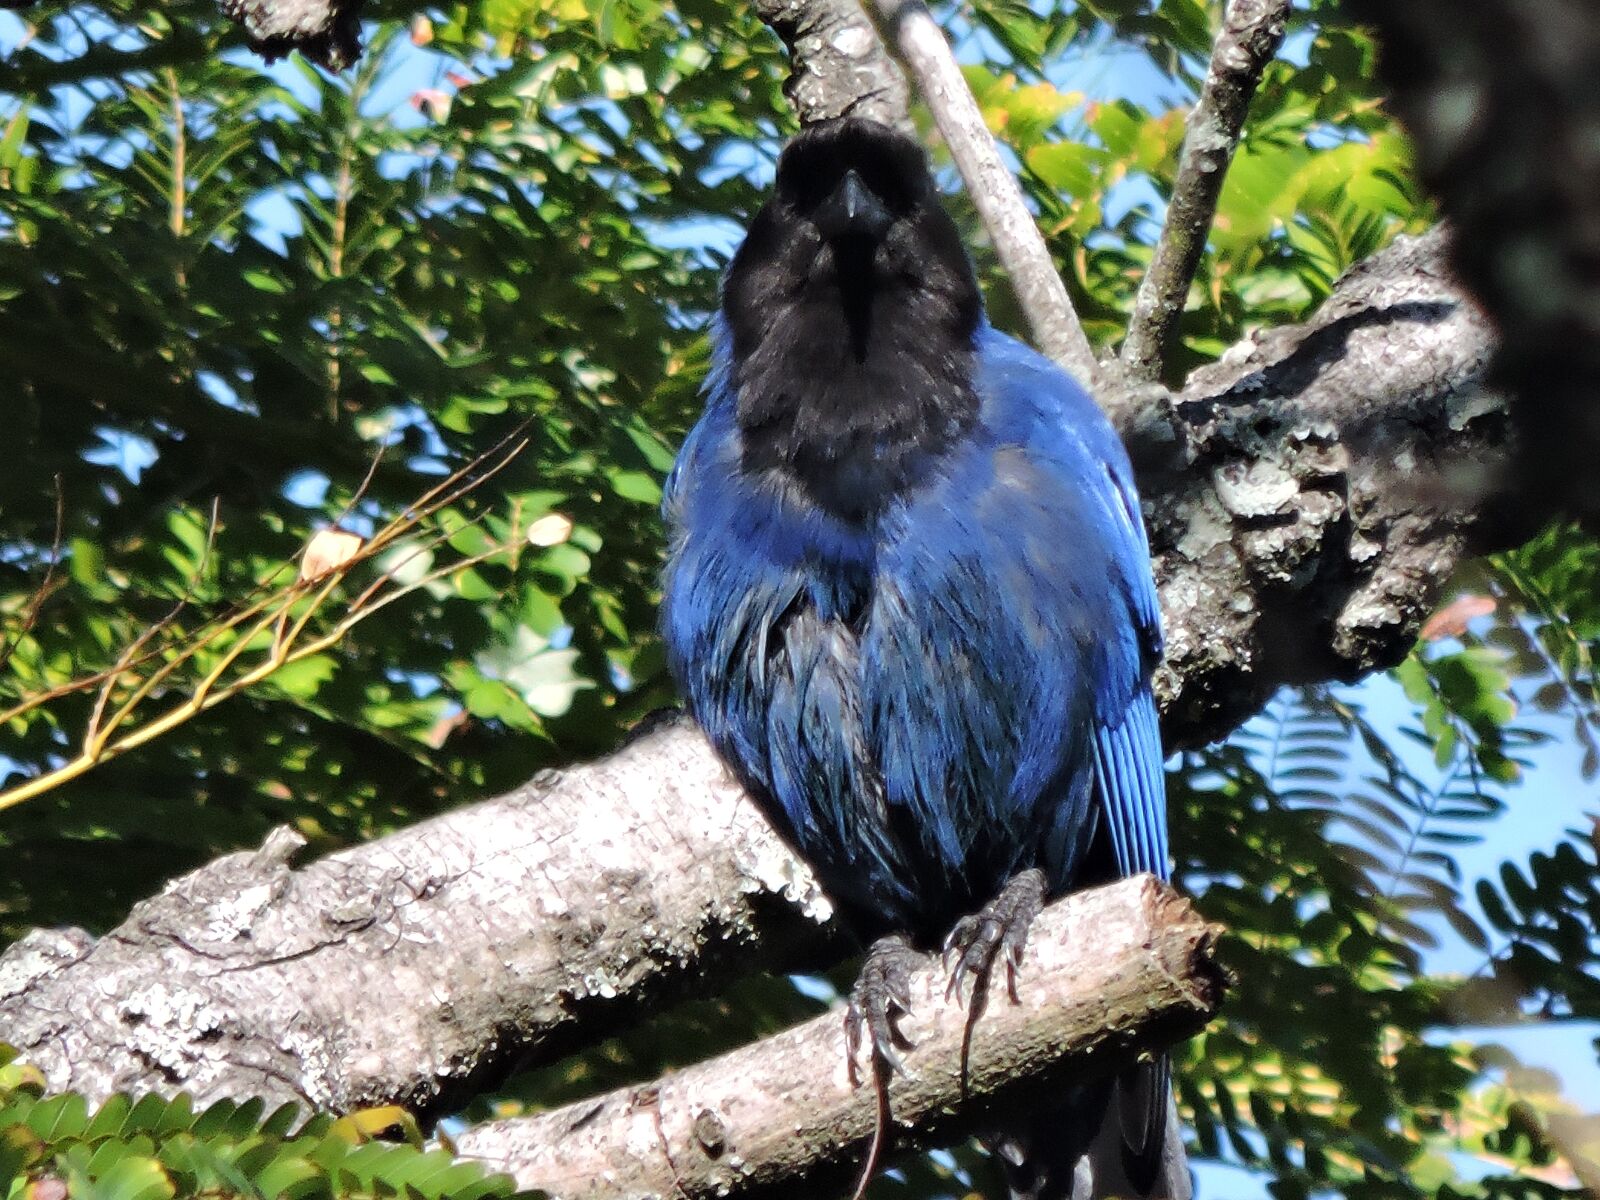 Nikon Coolpix P530 sample photo. Pássaro, ave, azul photography